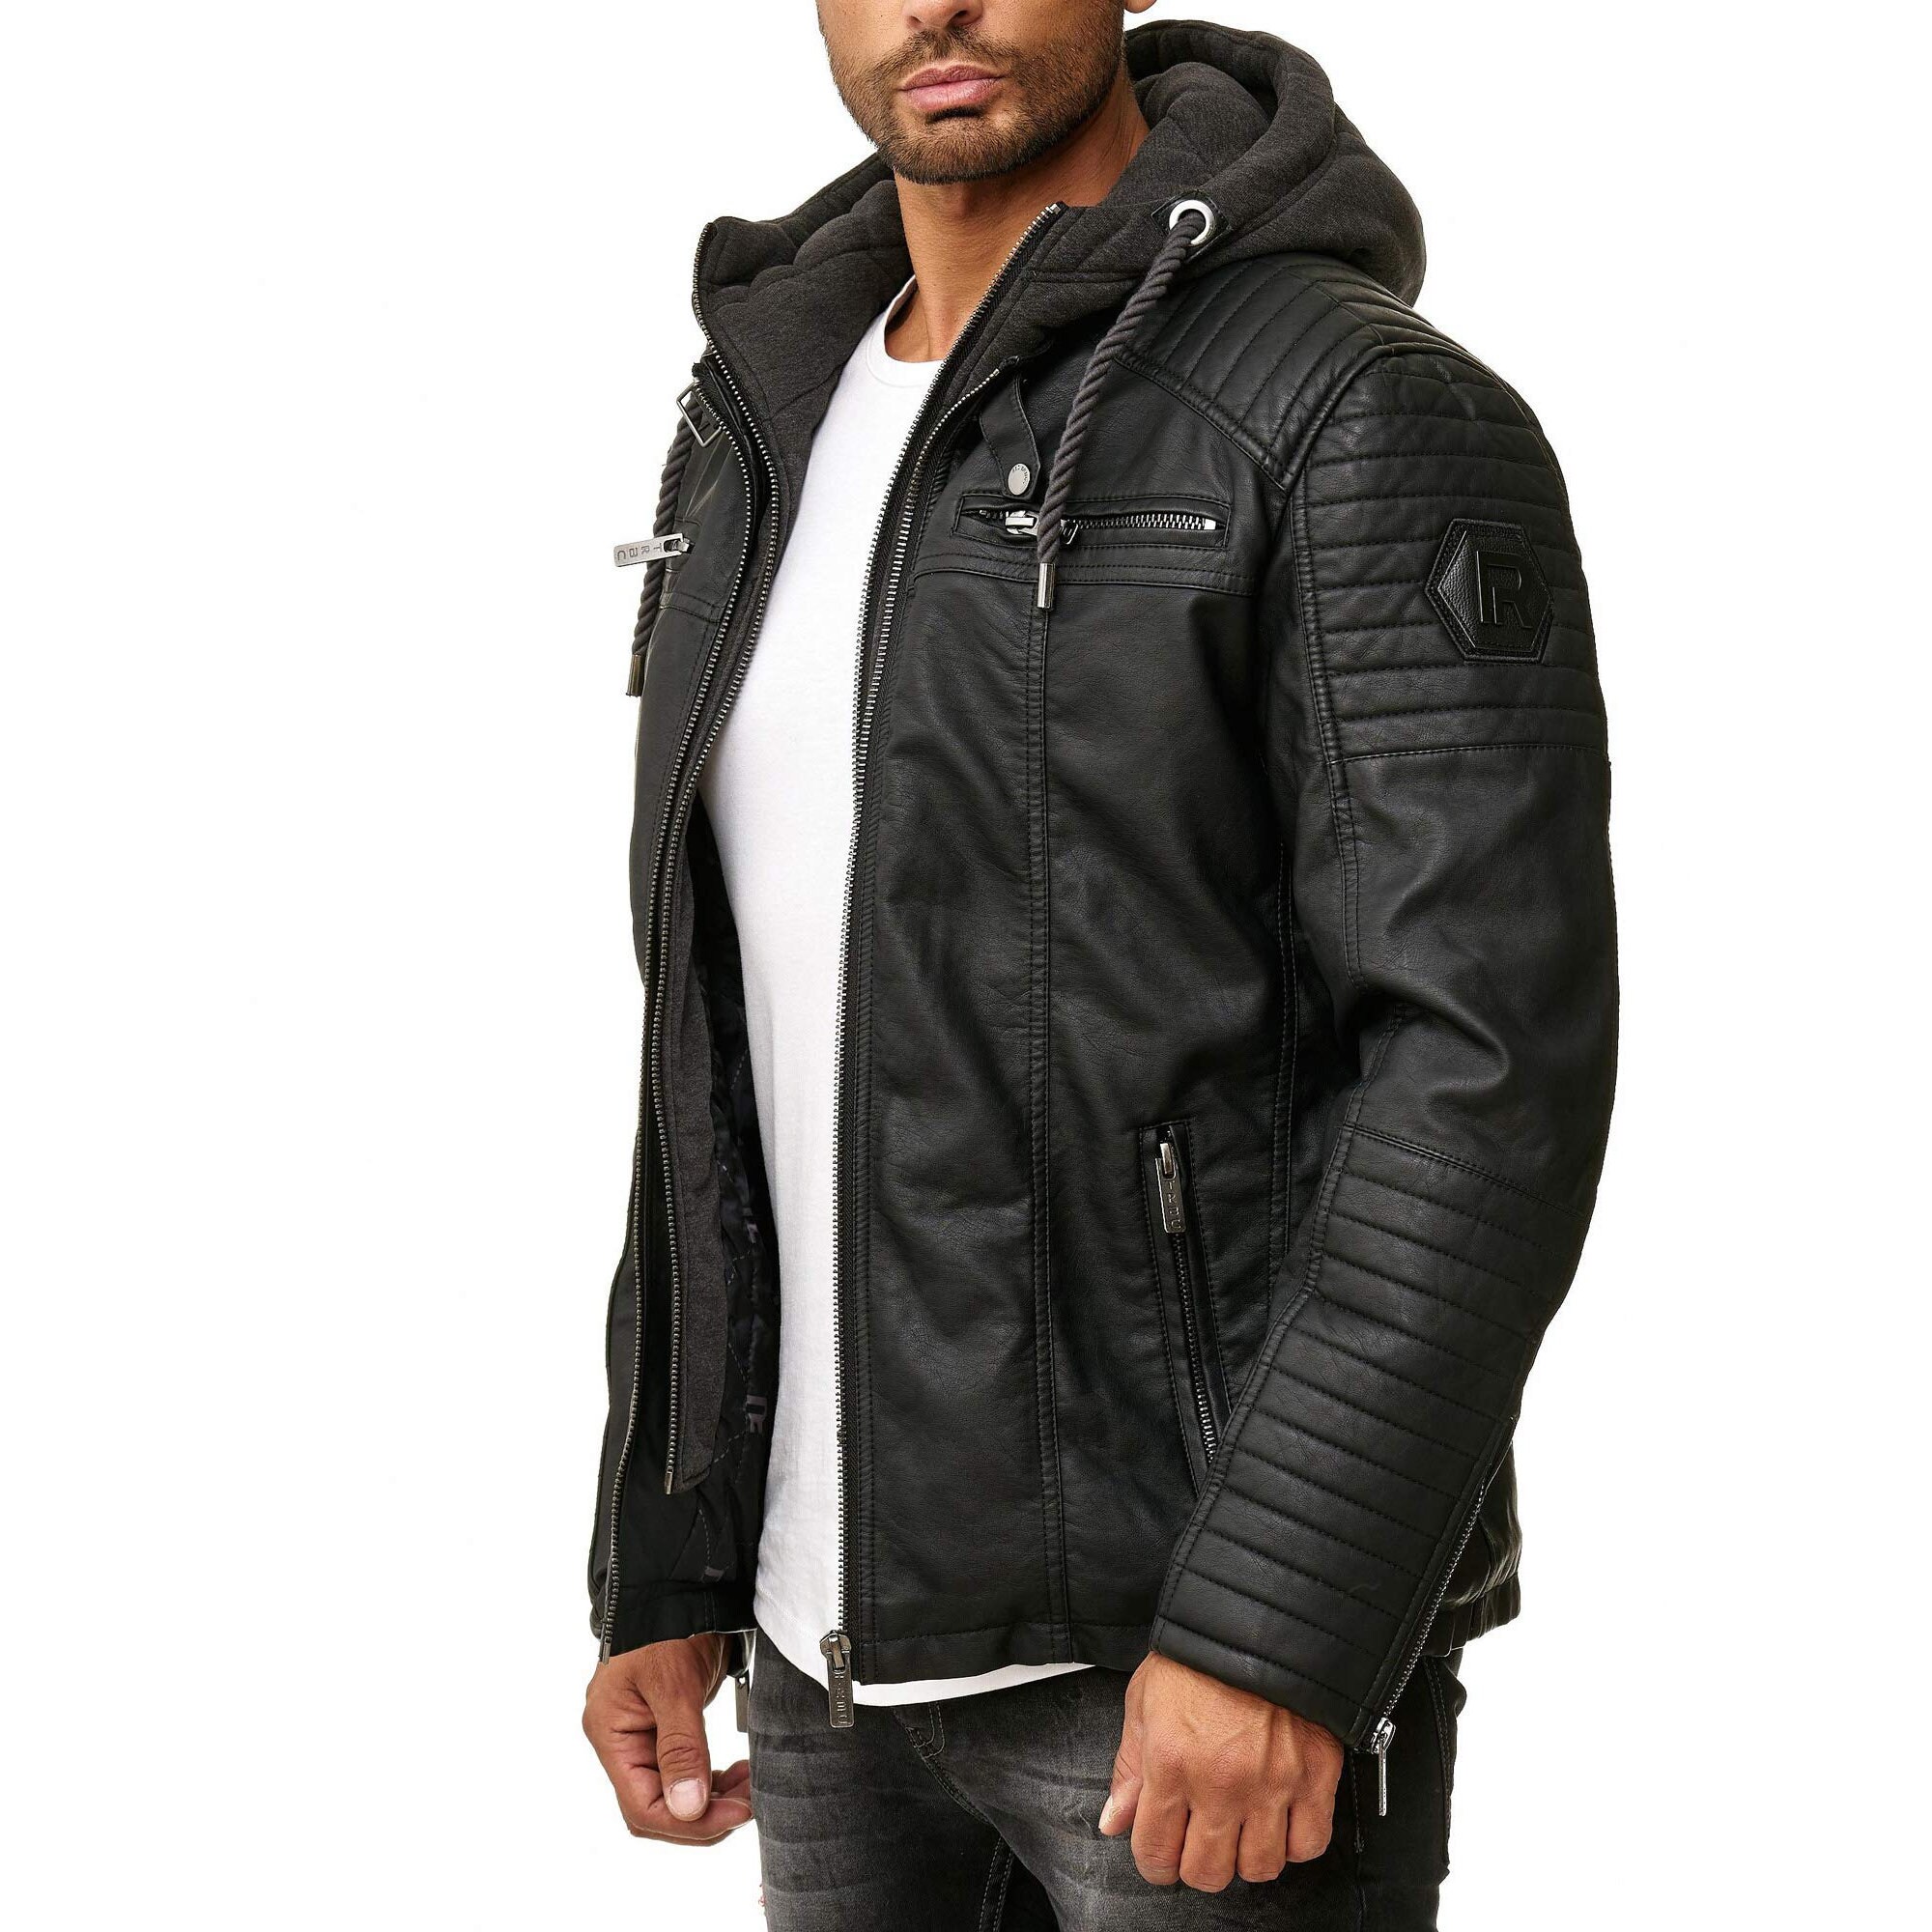 Men's Real Leather Jacket for Men Transition Black Biker - Etsy